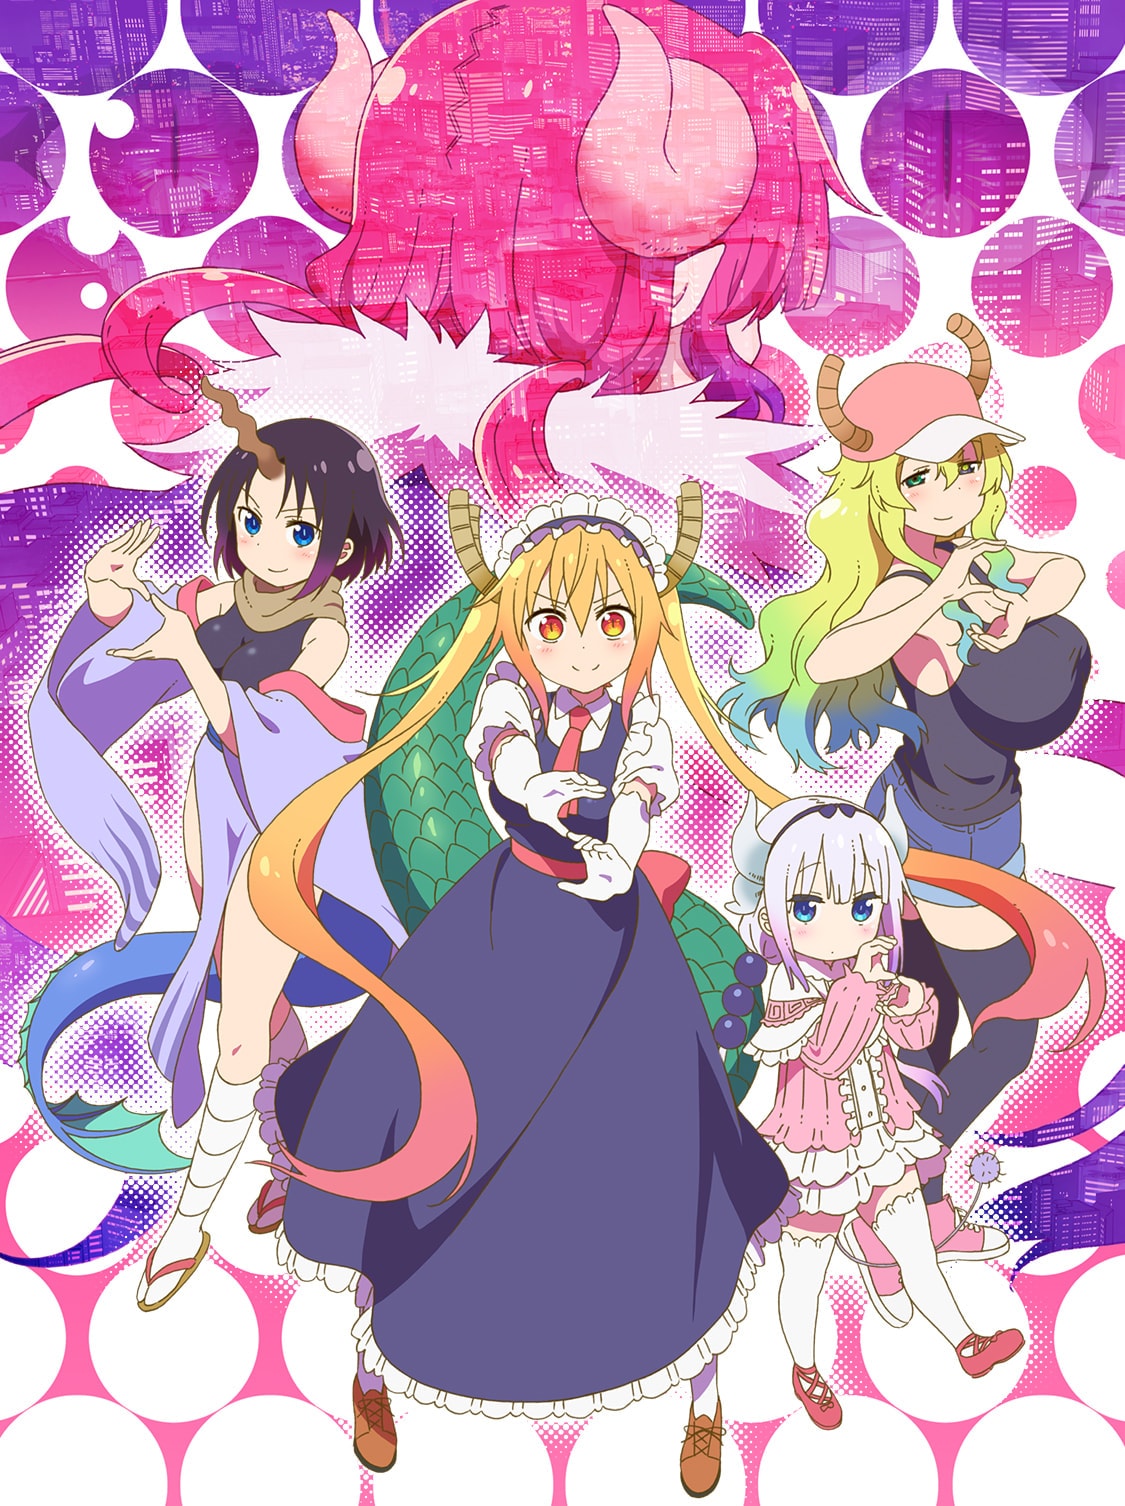 TVアニメ第2期「小林さんちのメイドラゴンS」7月7日より放送開始!